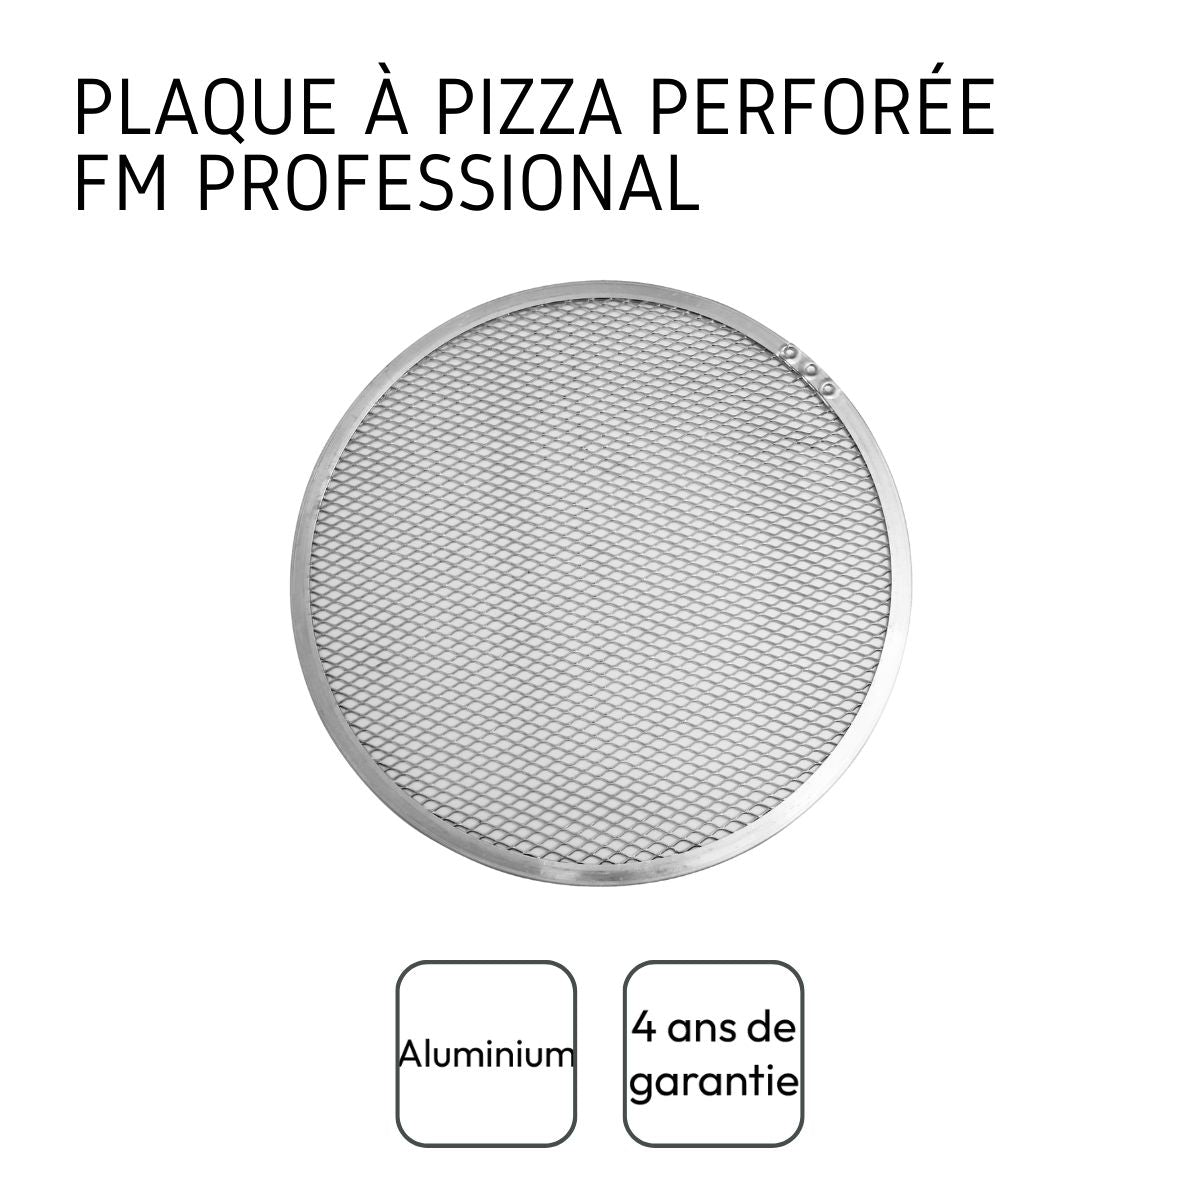 Plaque à pizza surgelée perforée en inox 33 cm FM Professional